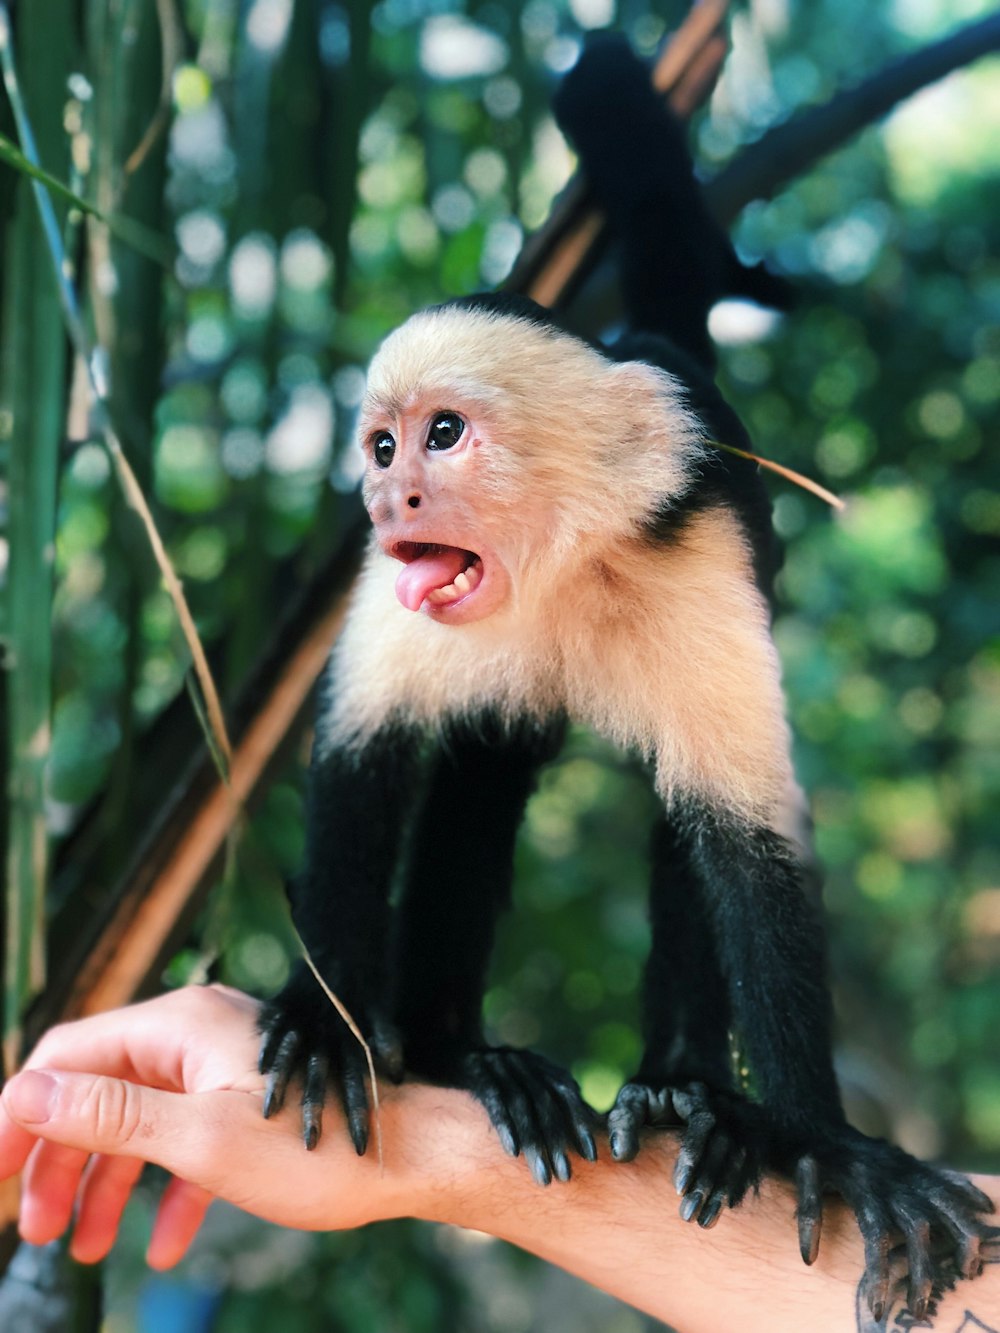 Flachfokusfotografie von schwarz-weißem Affen auf dem rechten Arm einer Person